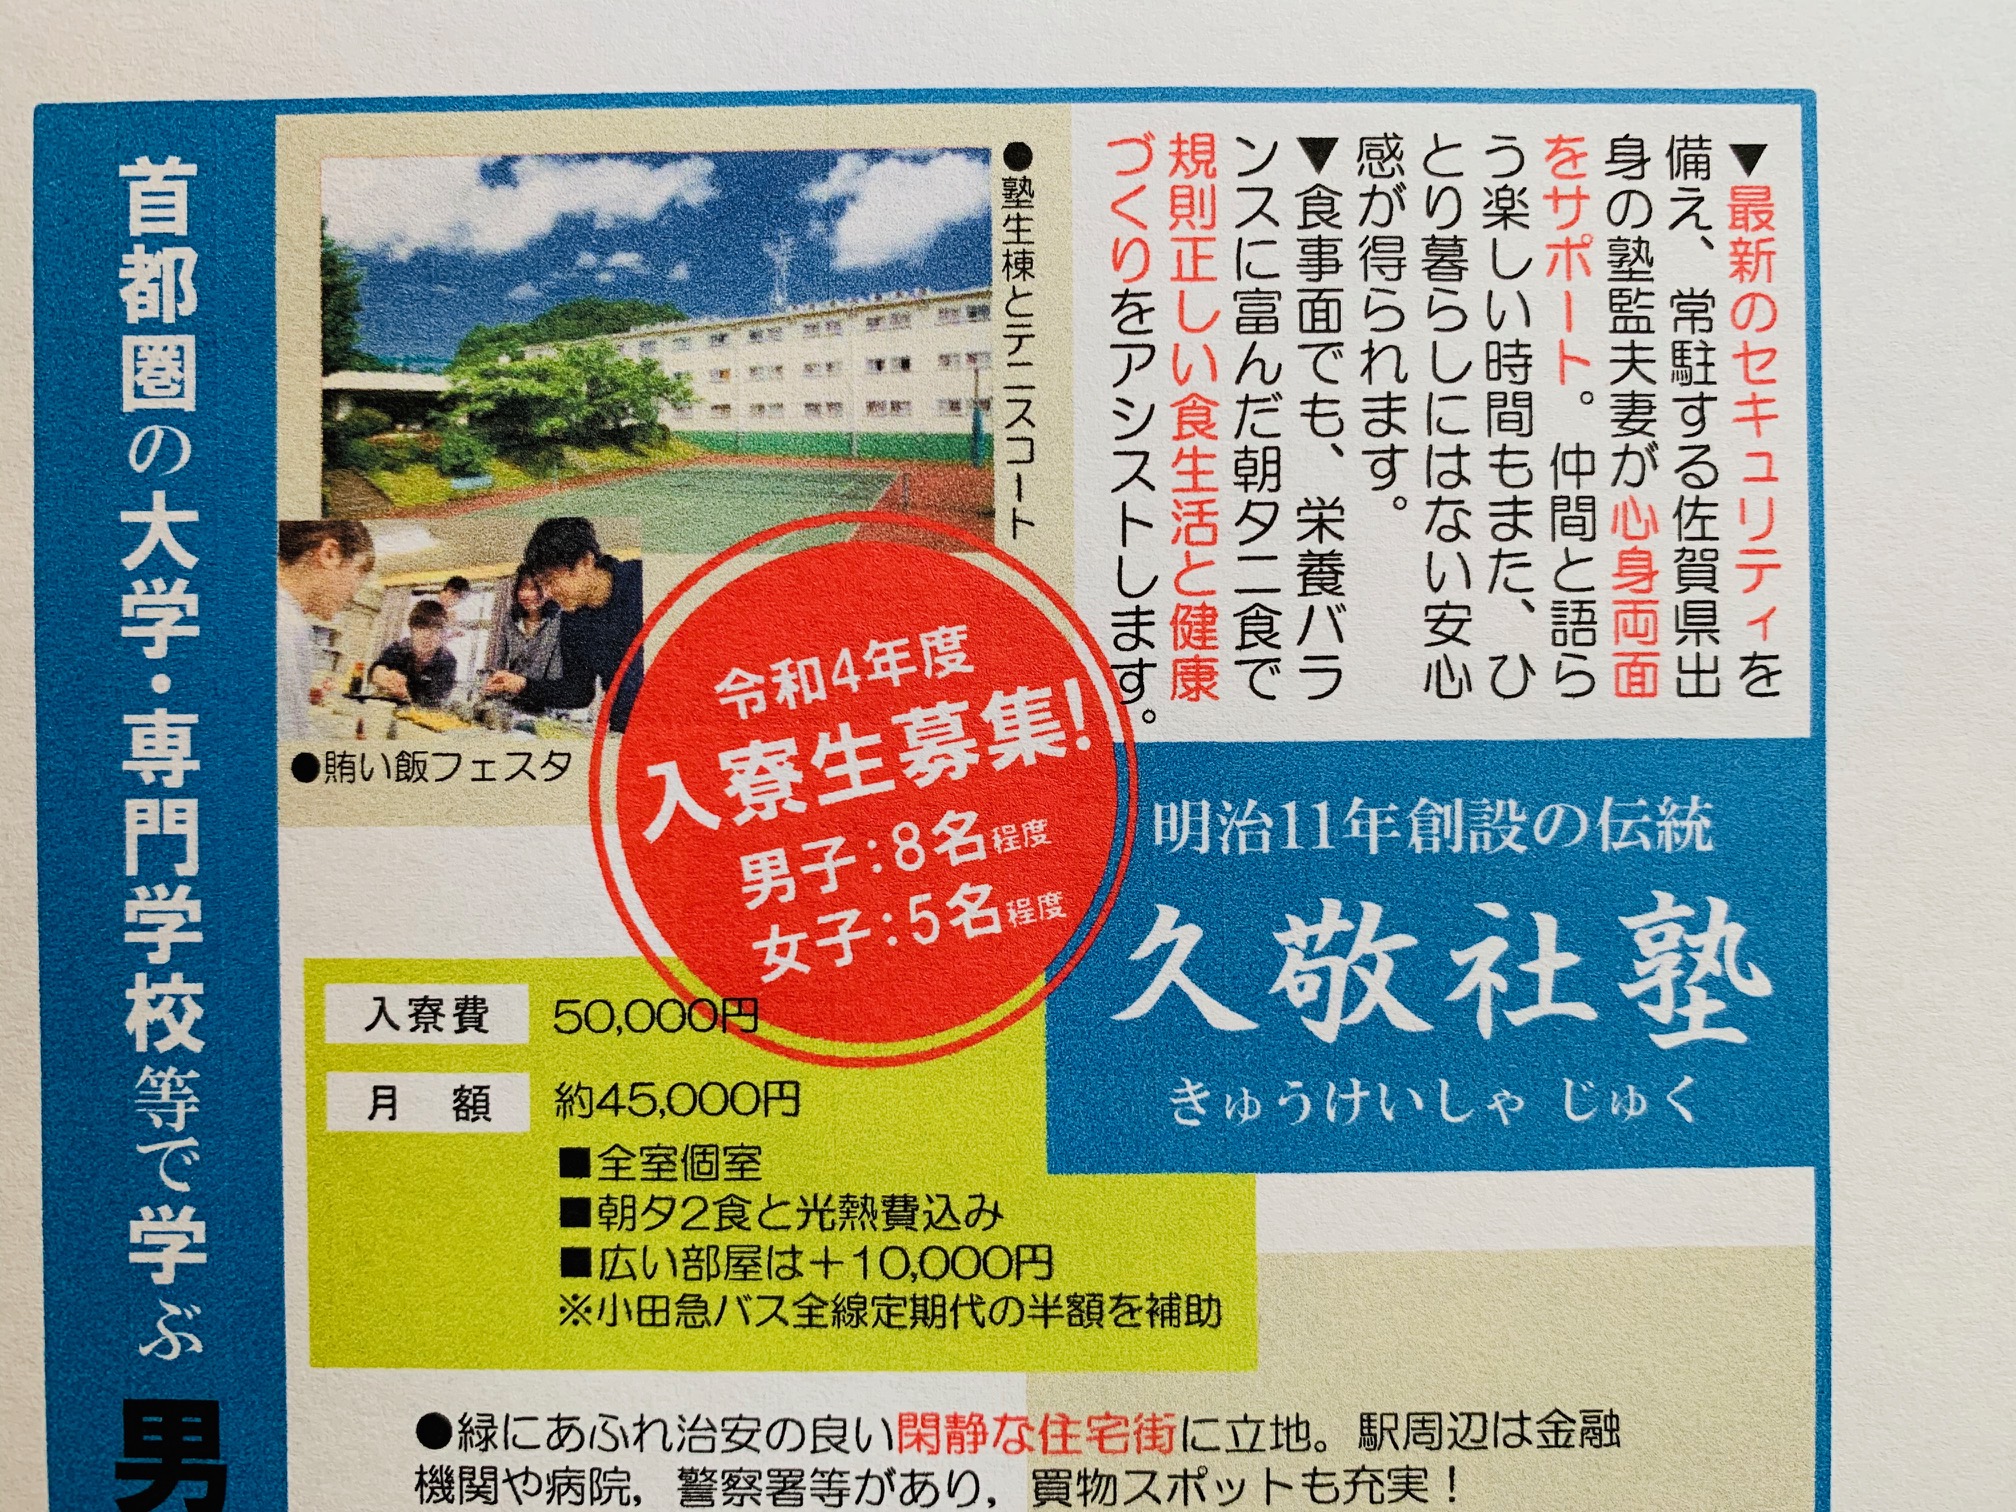 佐賀県高等学校PTA新聞に募集広告が掲載されました